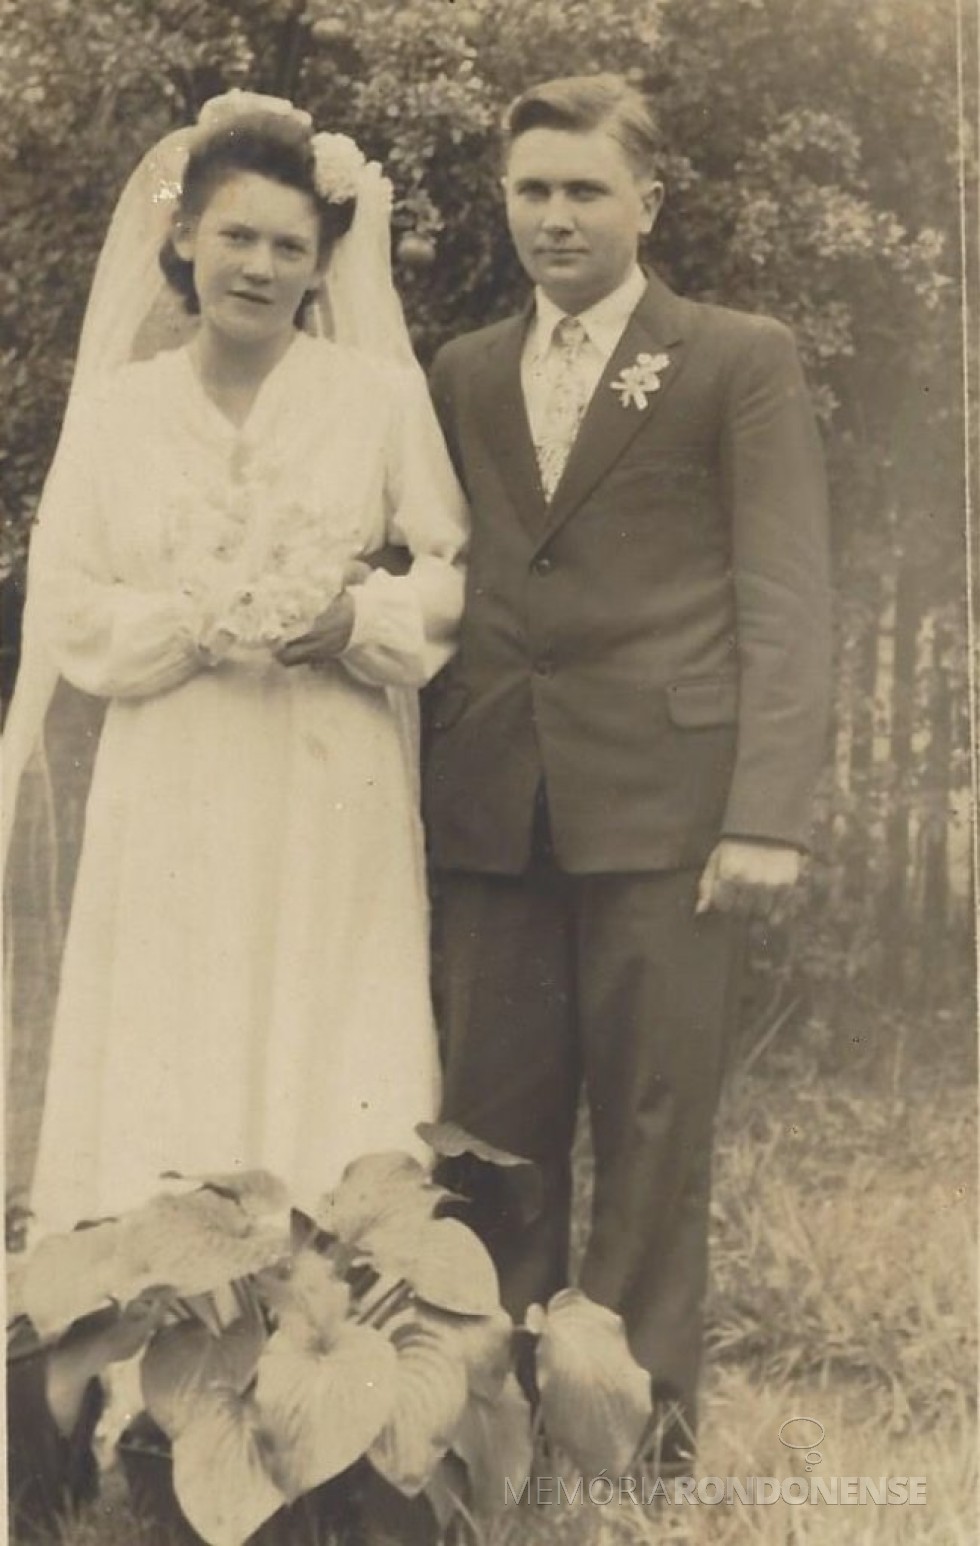 Os pioneiros rondonenses Maria Dalita Witeck e Roberto Schütz,  que se casaram em Peritiba, SC. 
Imagem: Acervo pessoal - FOTO 1 - 